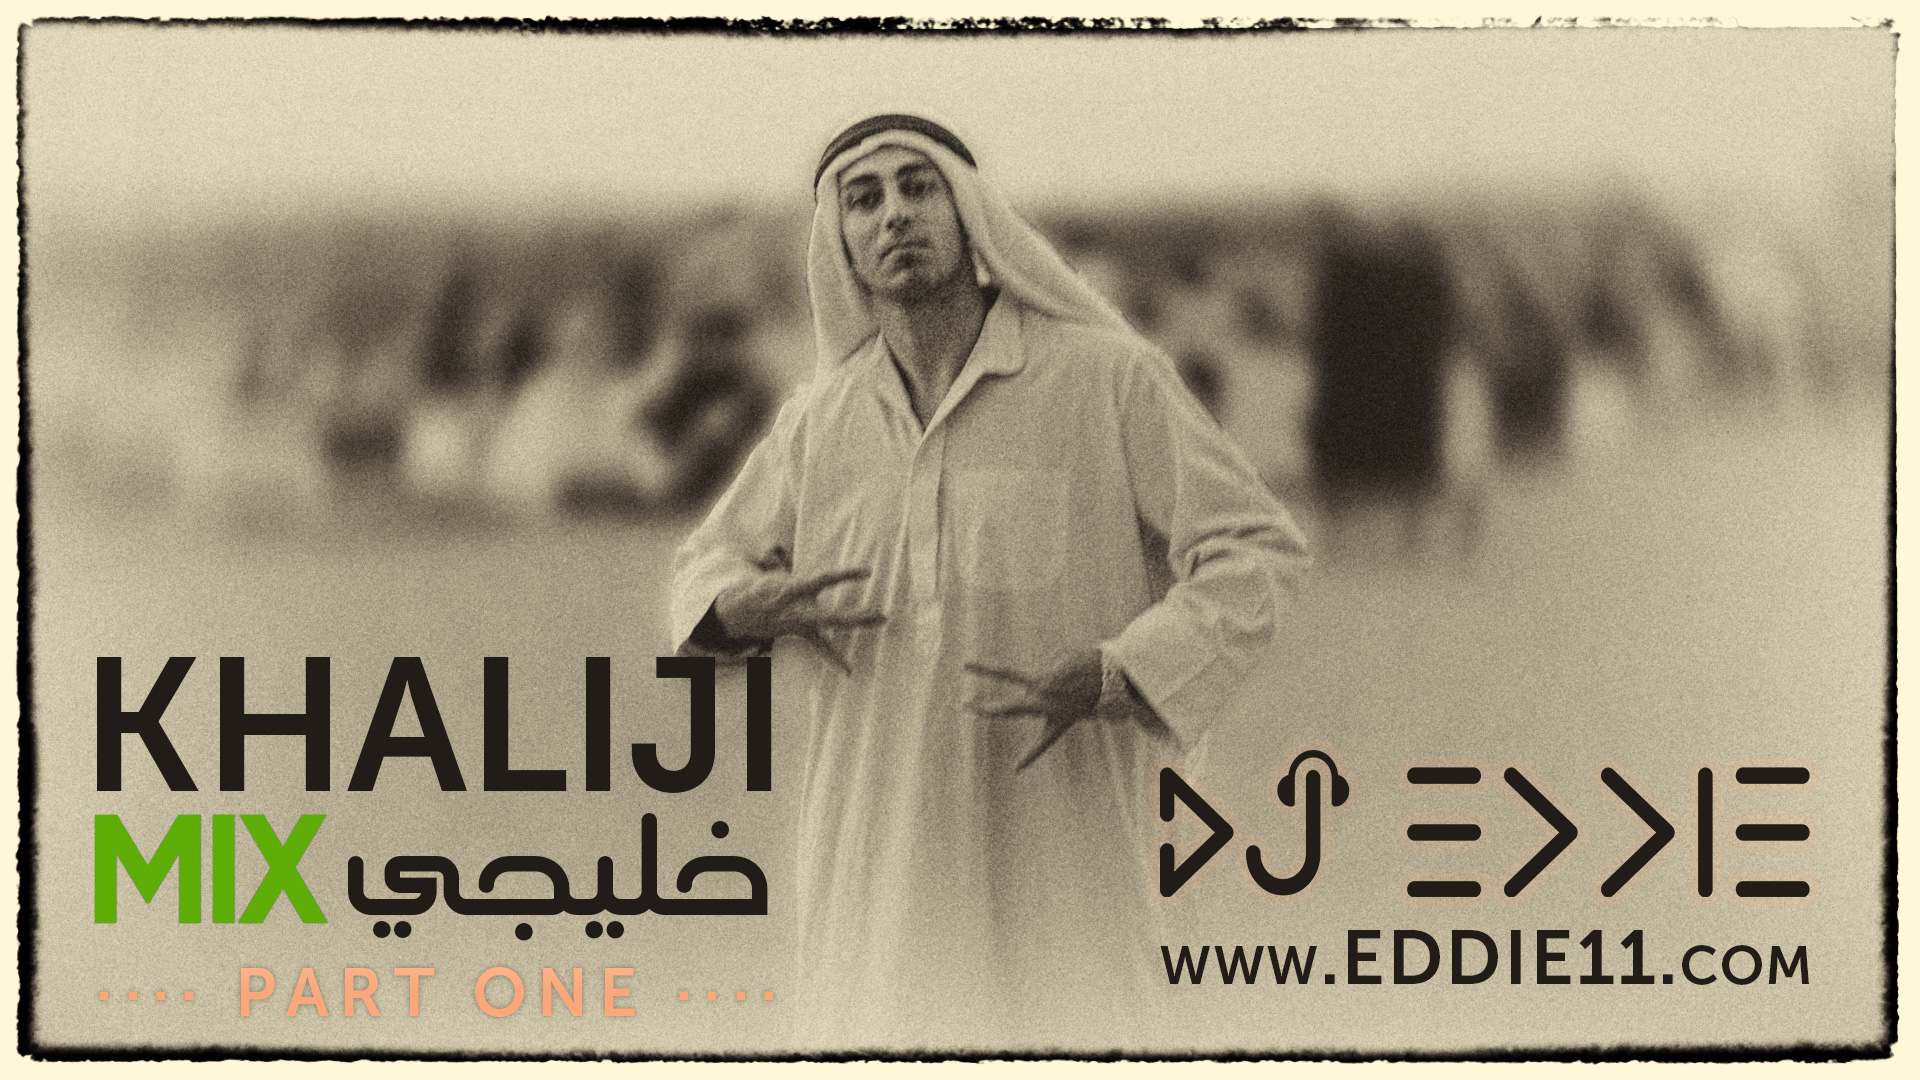 DJ Eddie - Khaliji Mix Part 1 2017 ميكس خليجي عربي